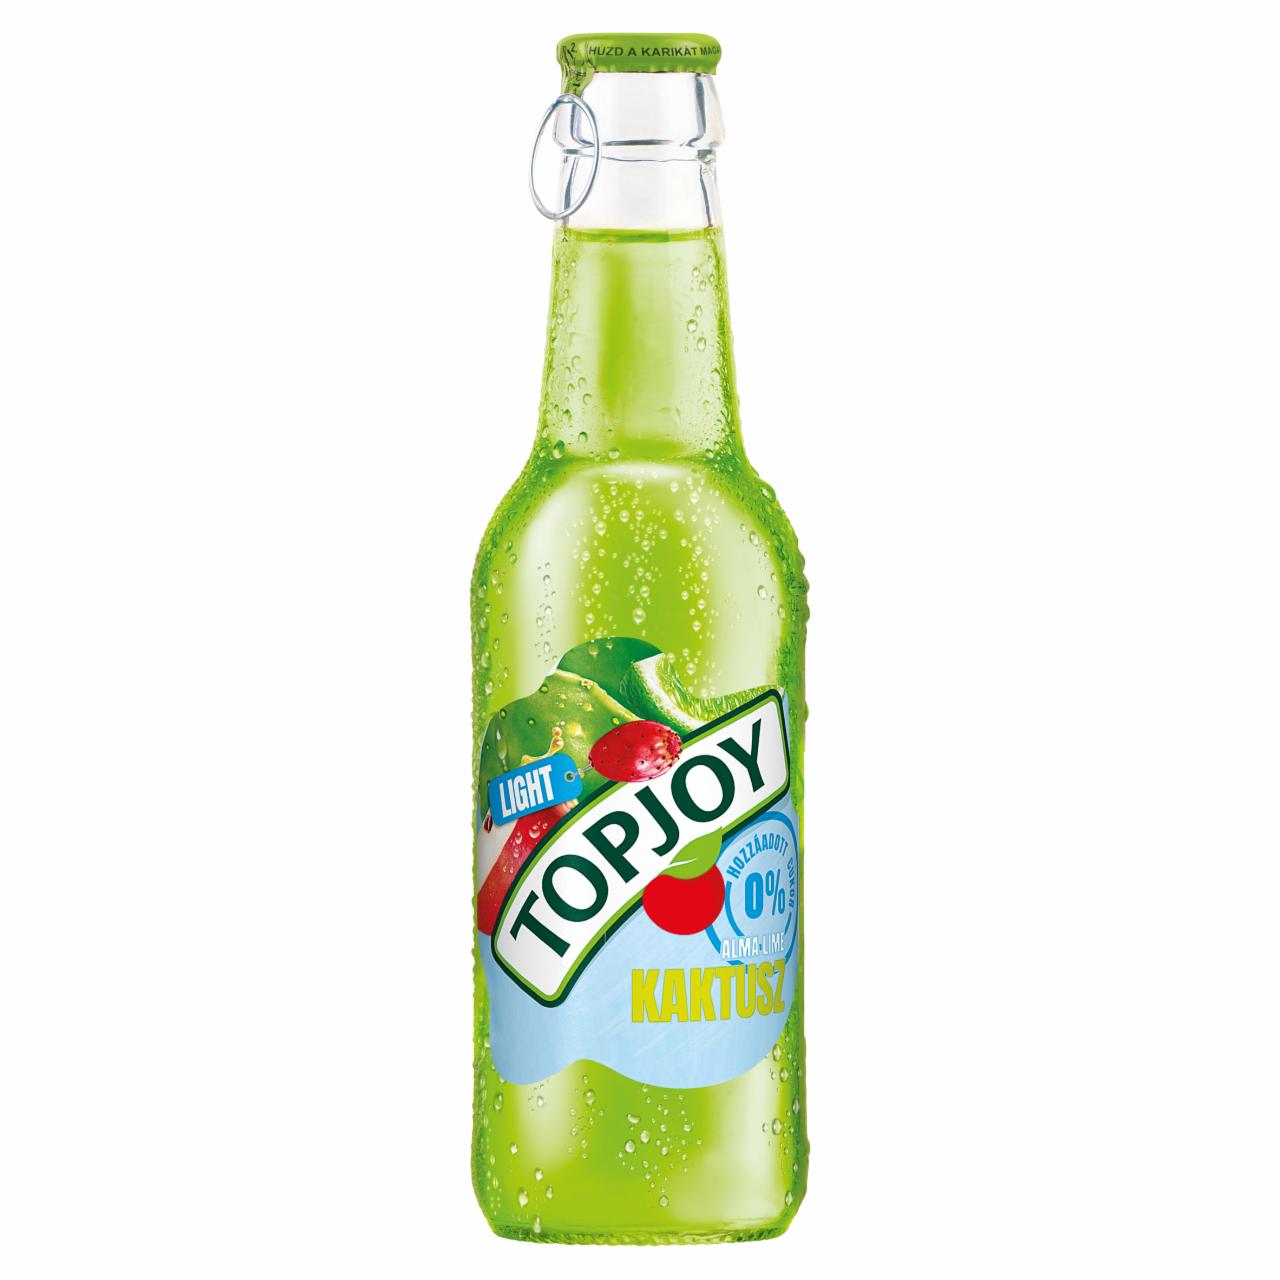 Képek - Topjoy Light alma-lime-kaktusz ital édesítőszerekkel 250 ml